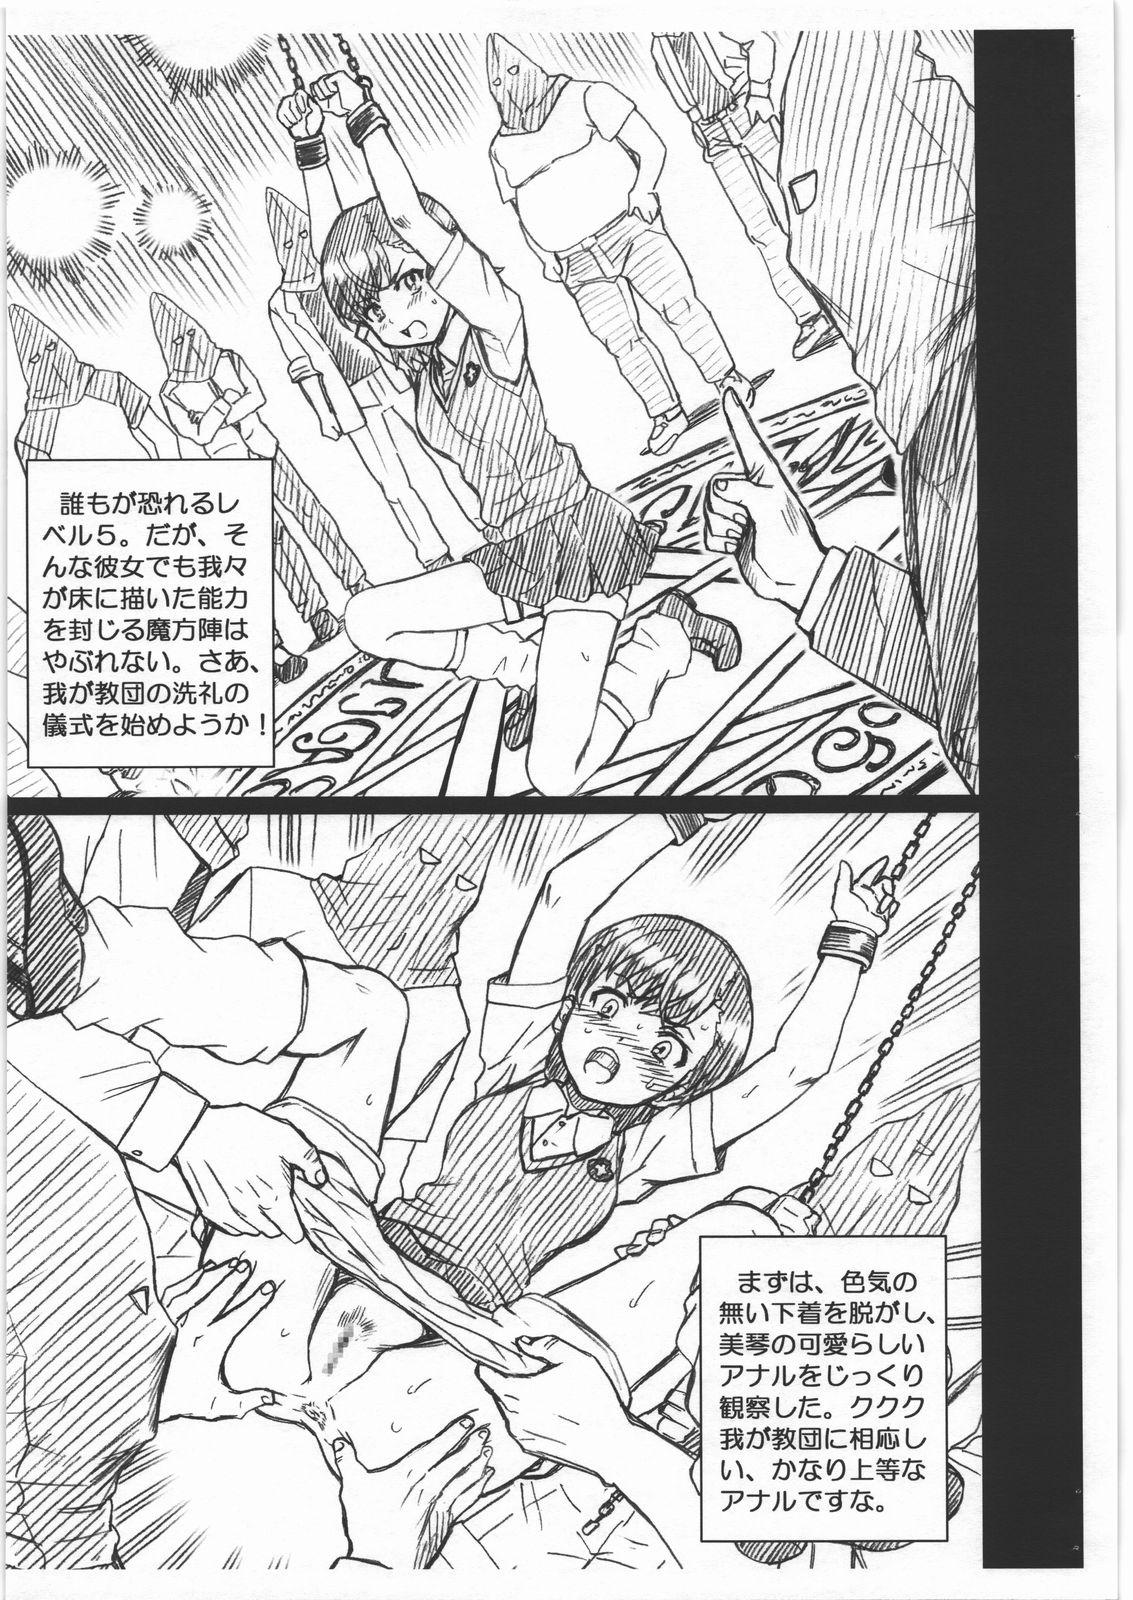 Big Dicks KINSYO FILE Misaka Mikoto Gazoushuu - Toaru majutsu no index Gordinha - Page 3